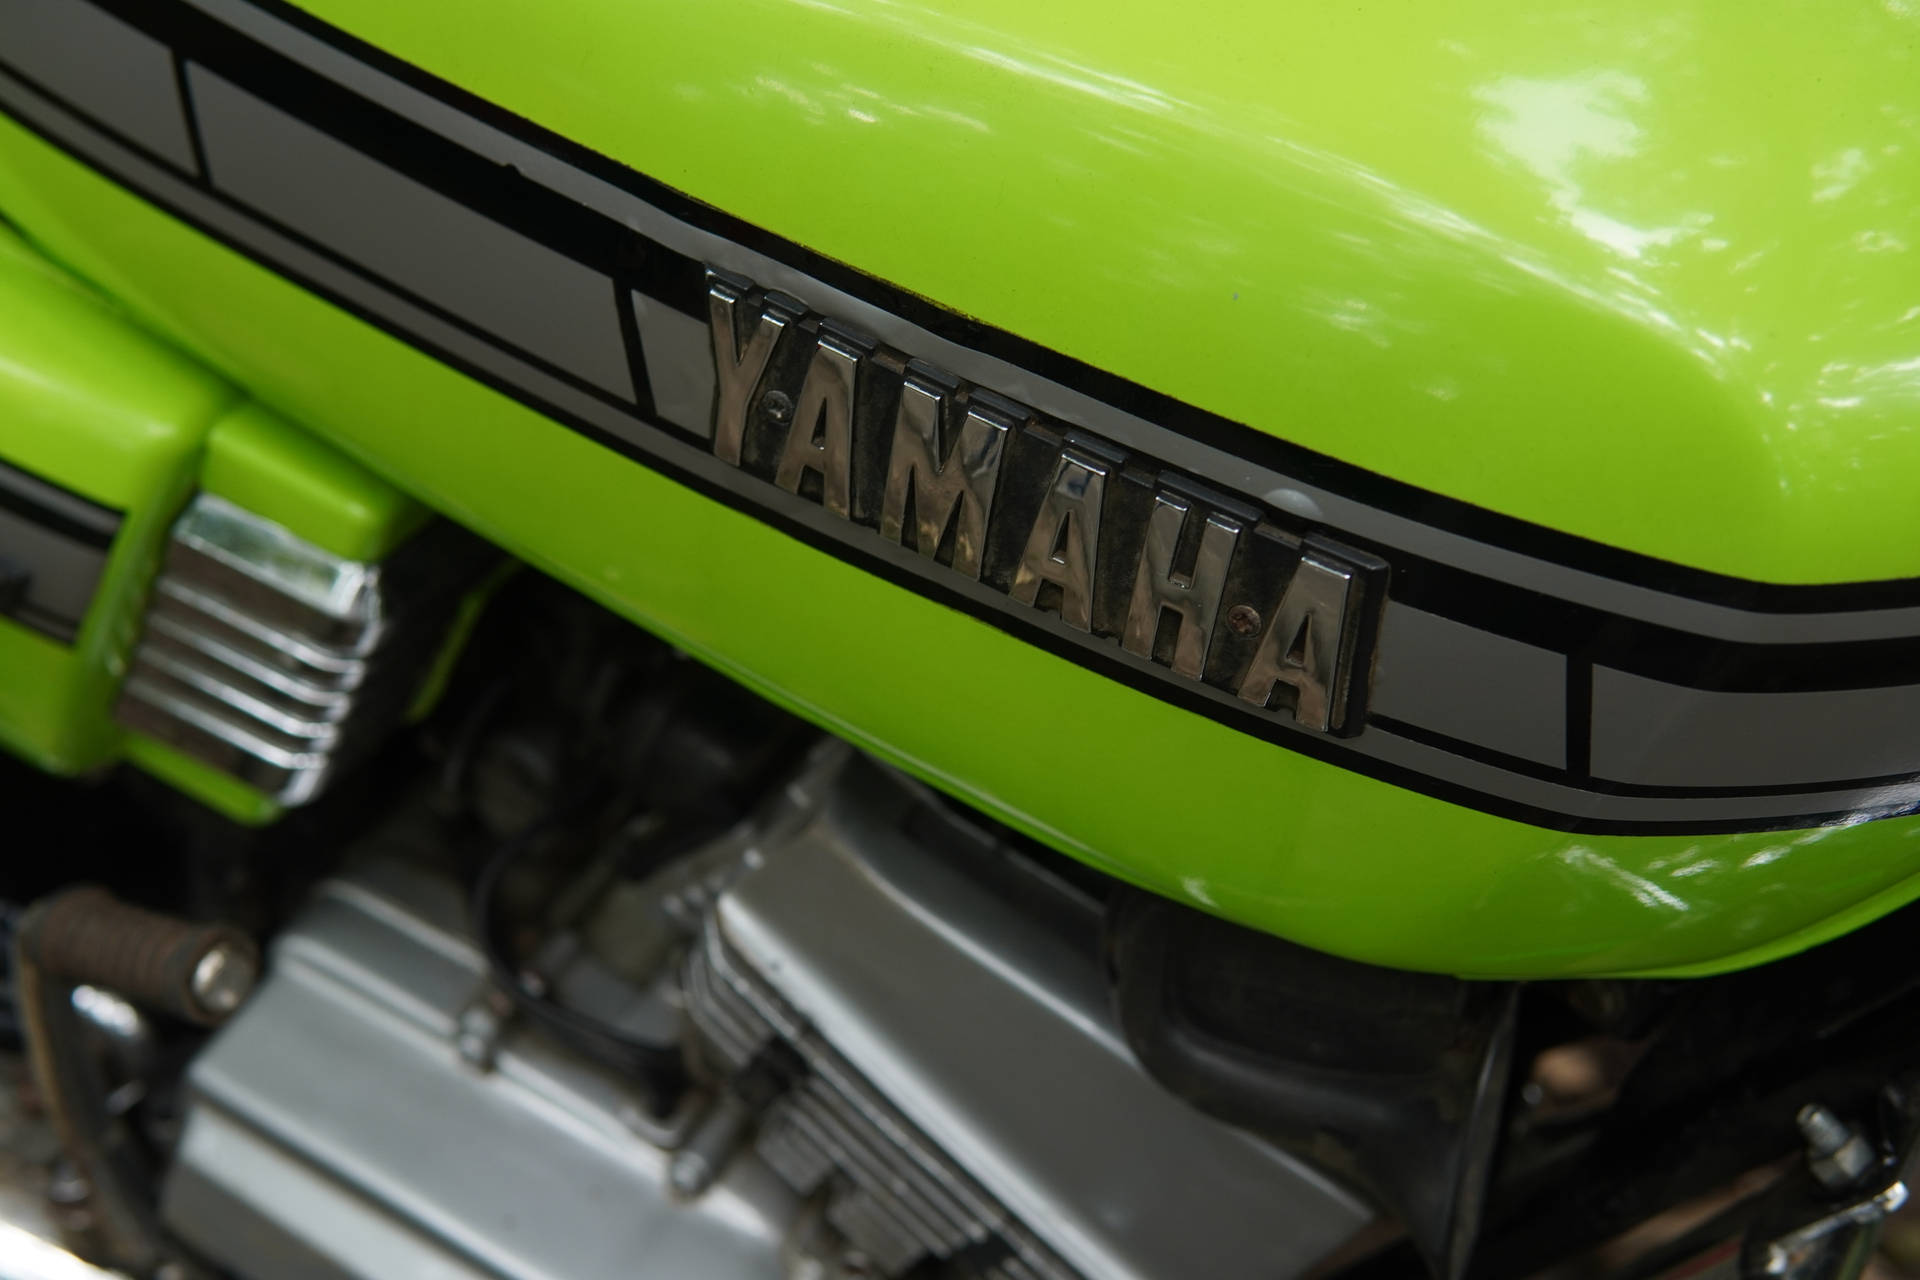 Neon Green Yamaha Rx100 Nærbillede Wallpaper